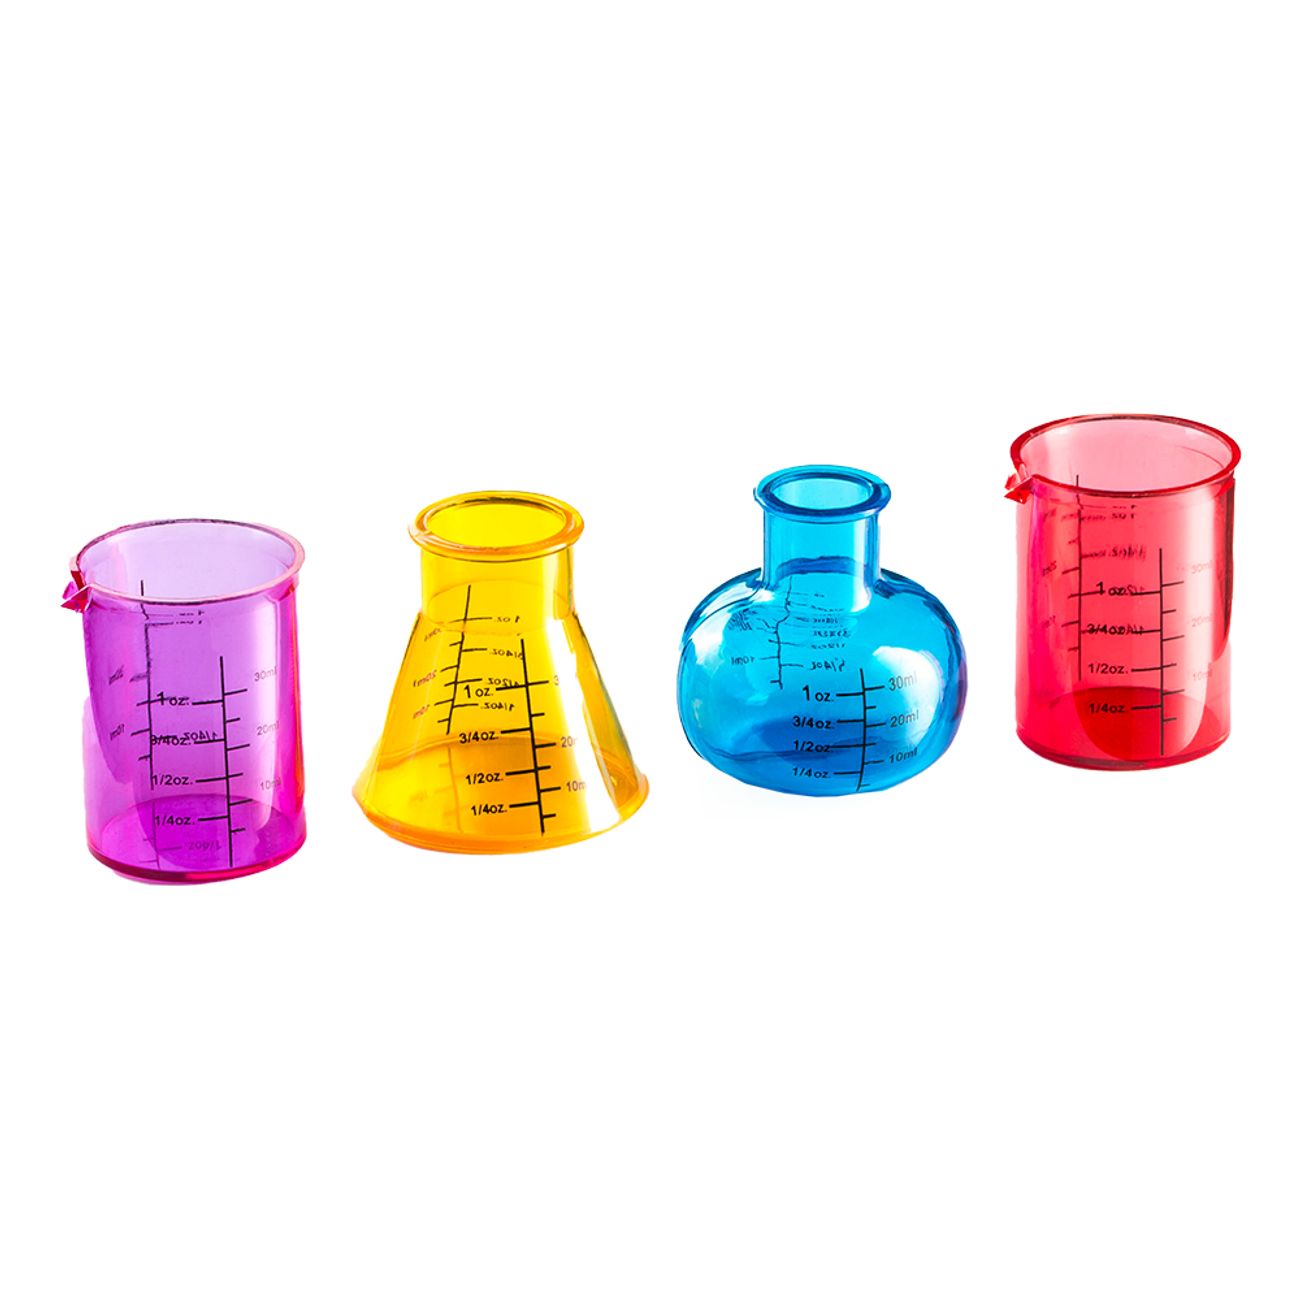 shotglas-kemiglas-flerfargade-84972-1